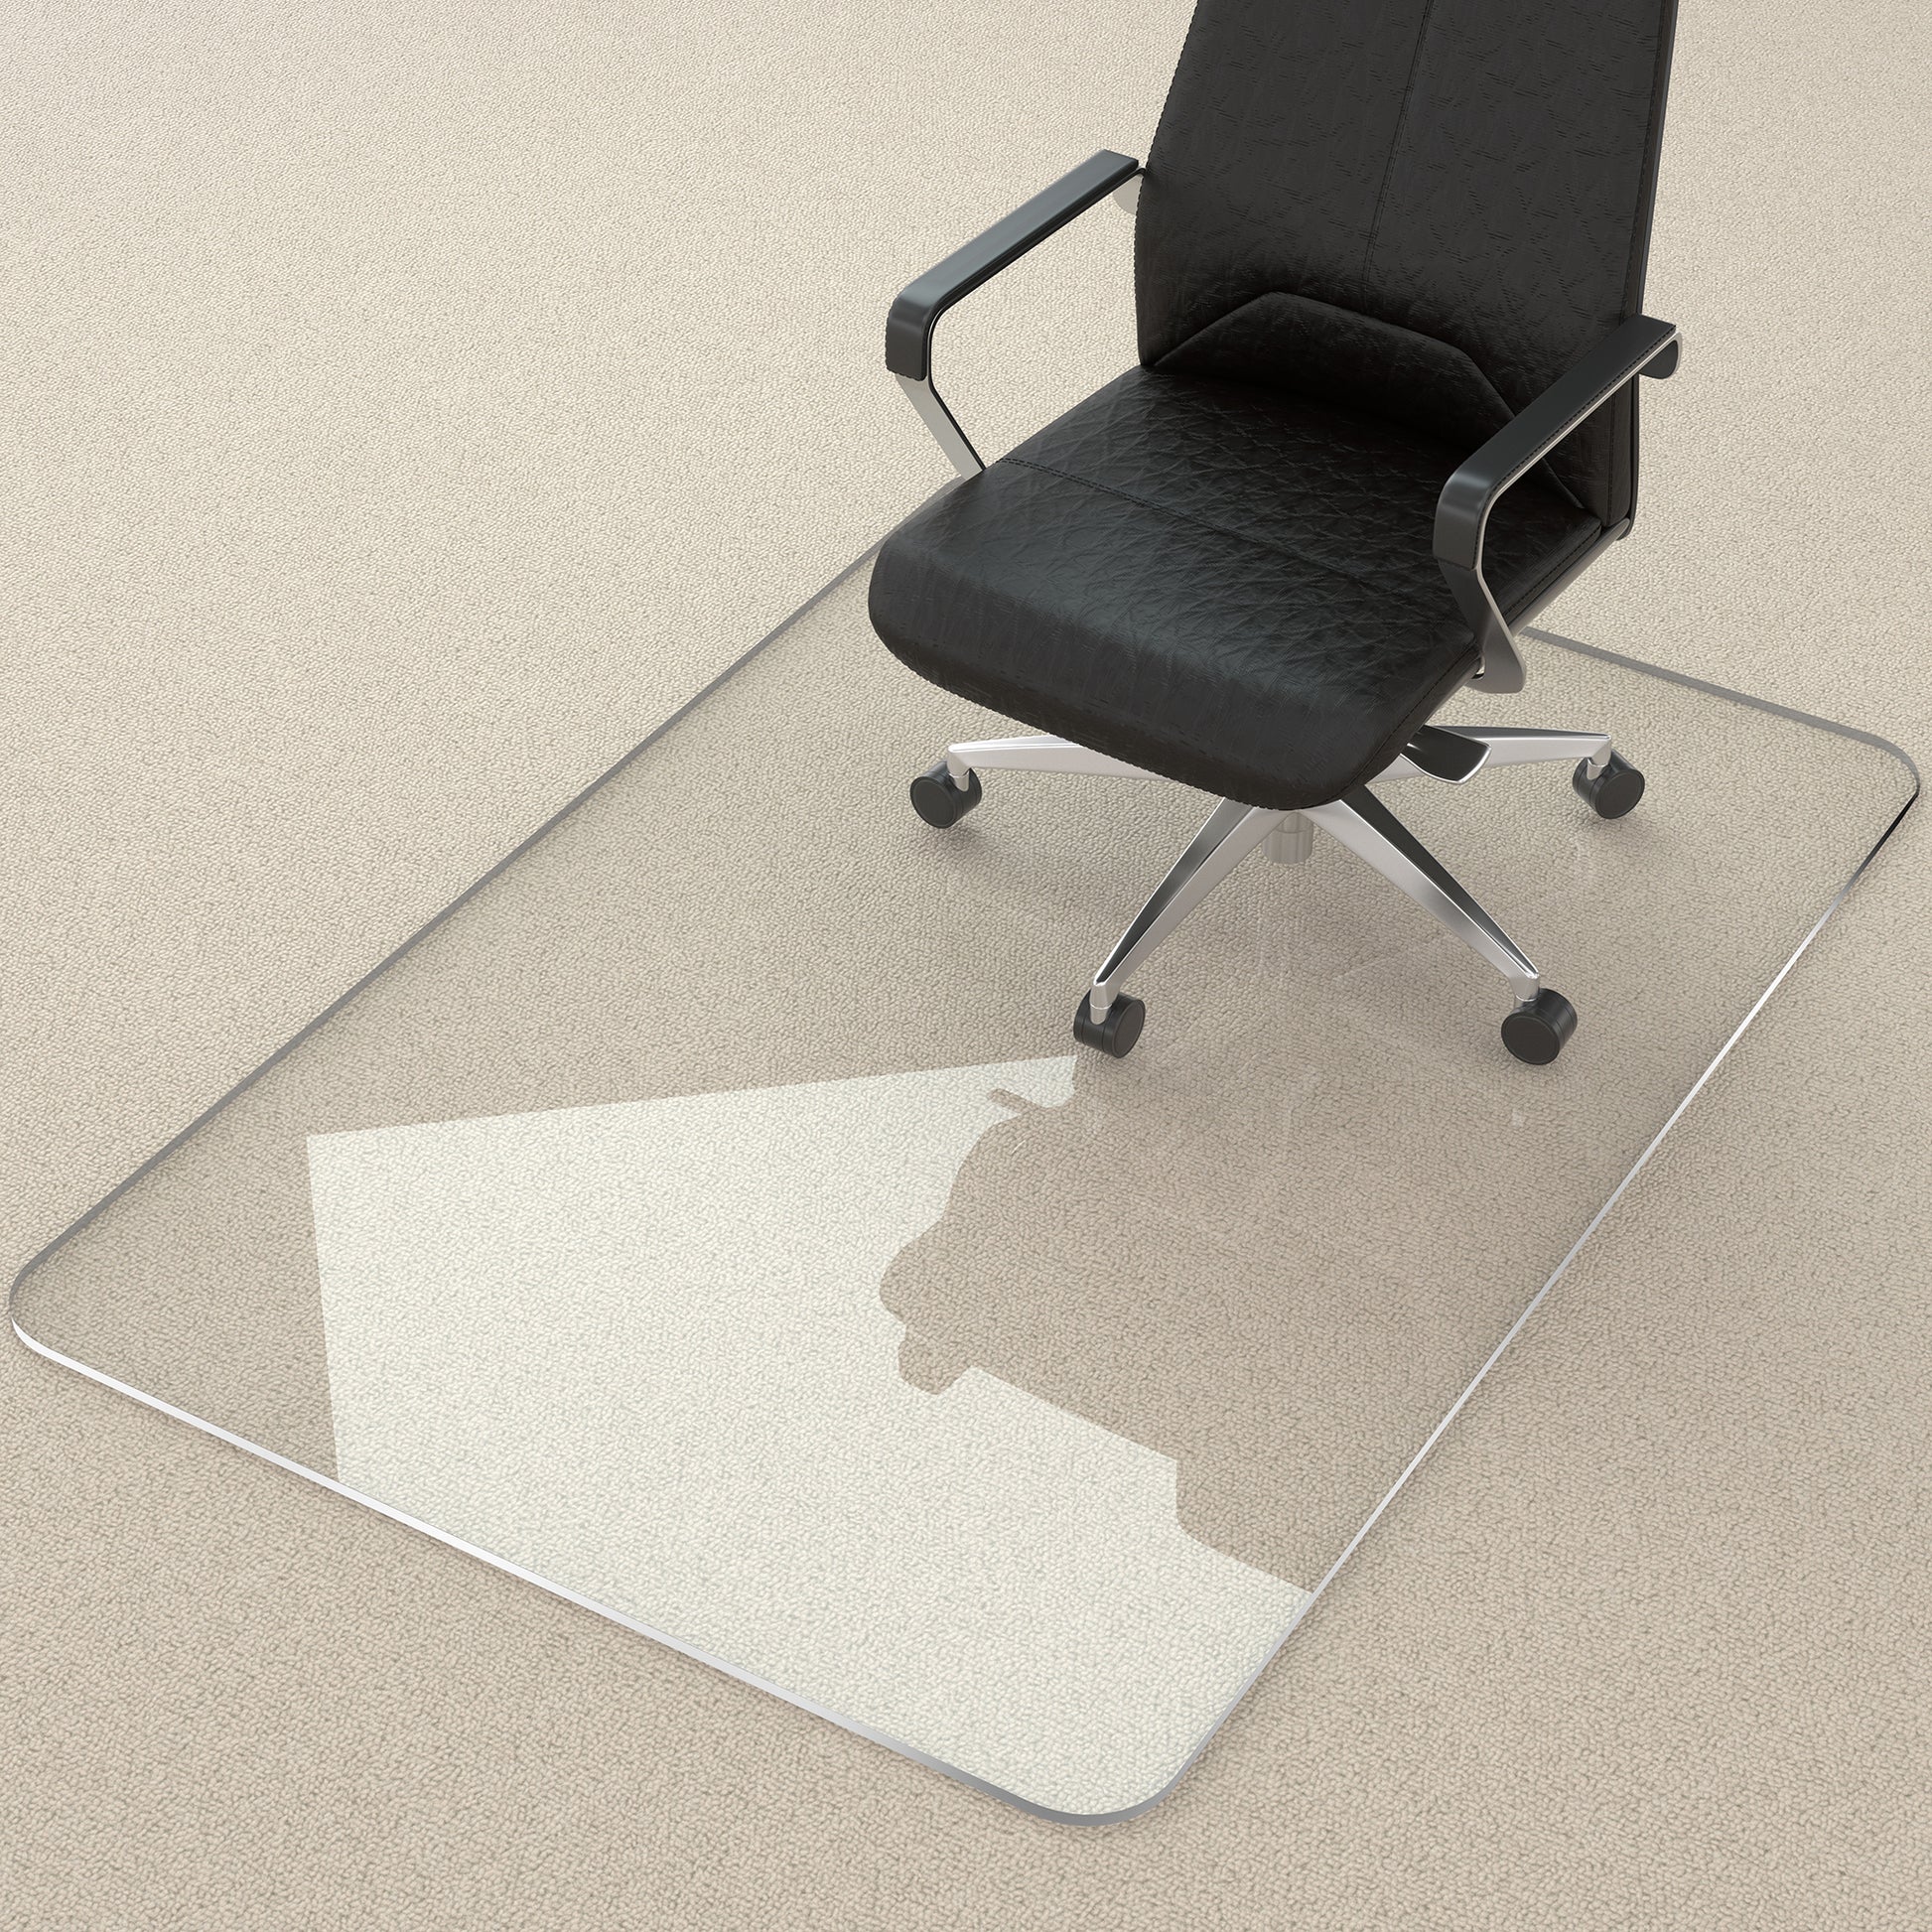 Aothia Office Clear Floor Mat Hardwood Floor Chair Pad - 36 X 47